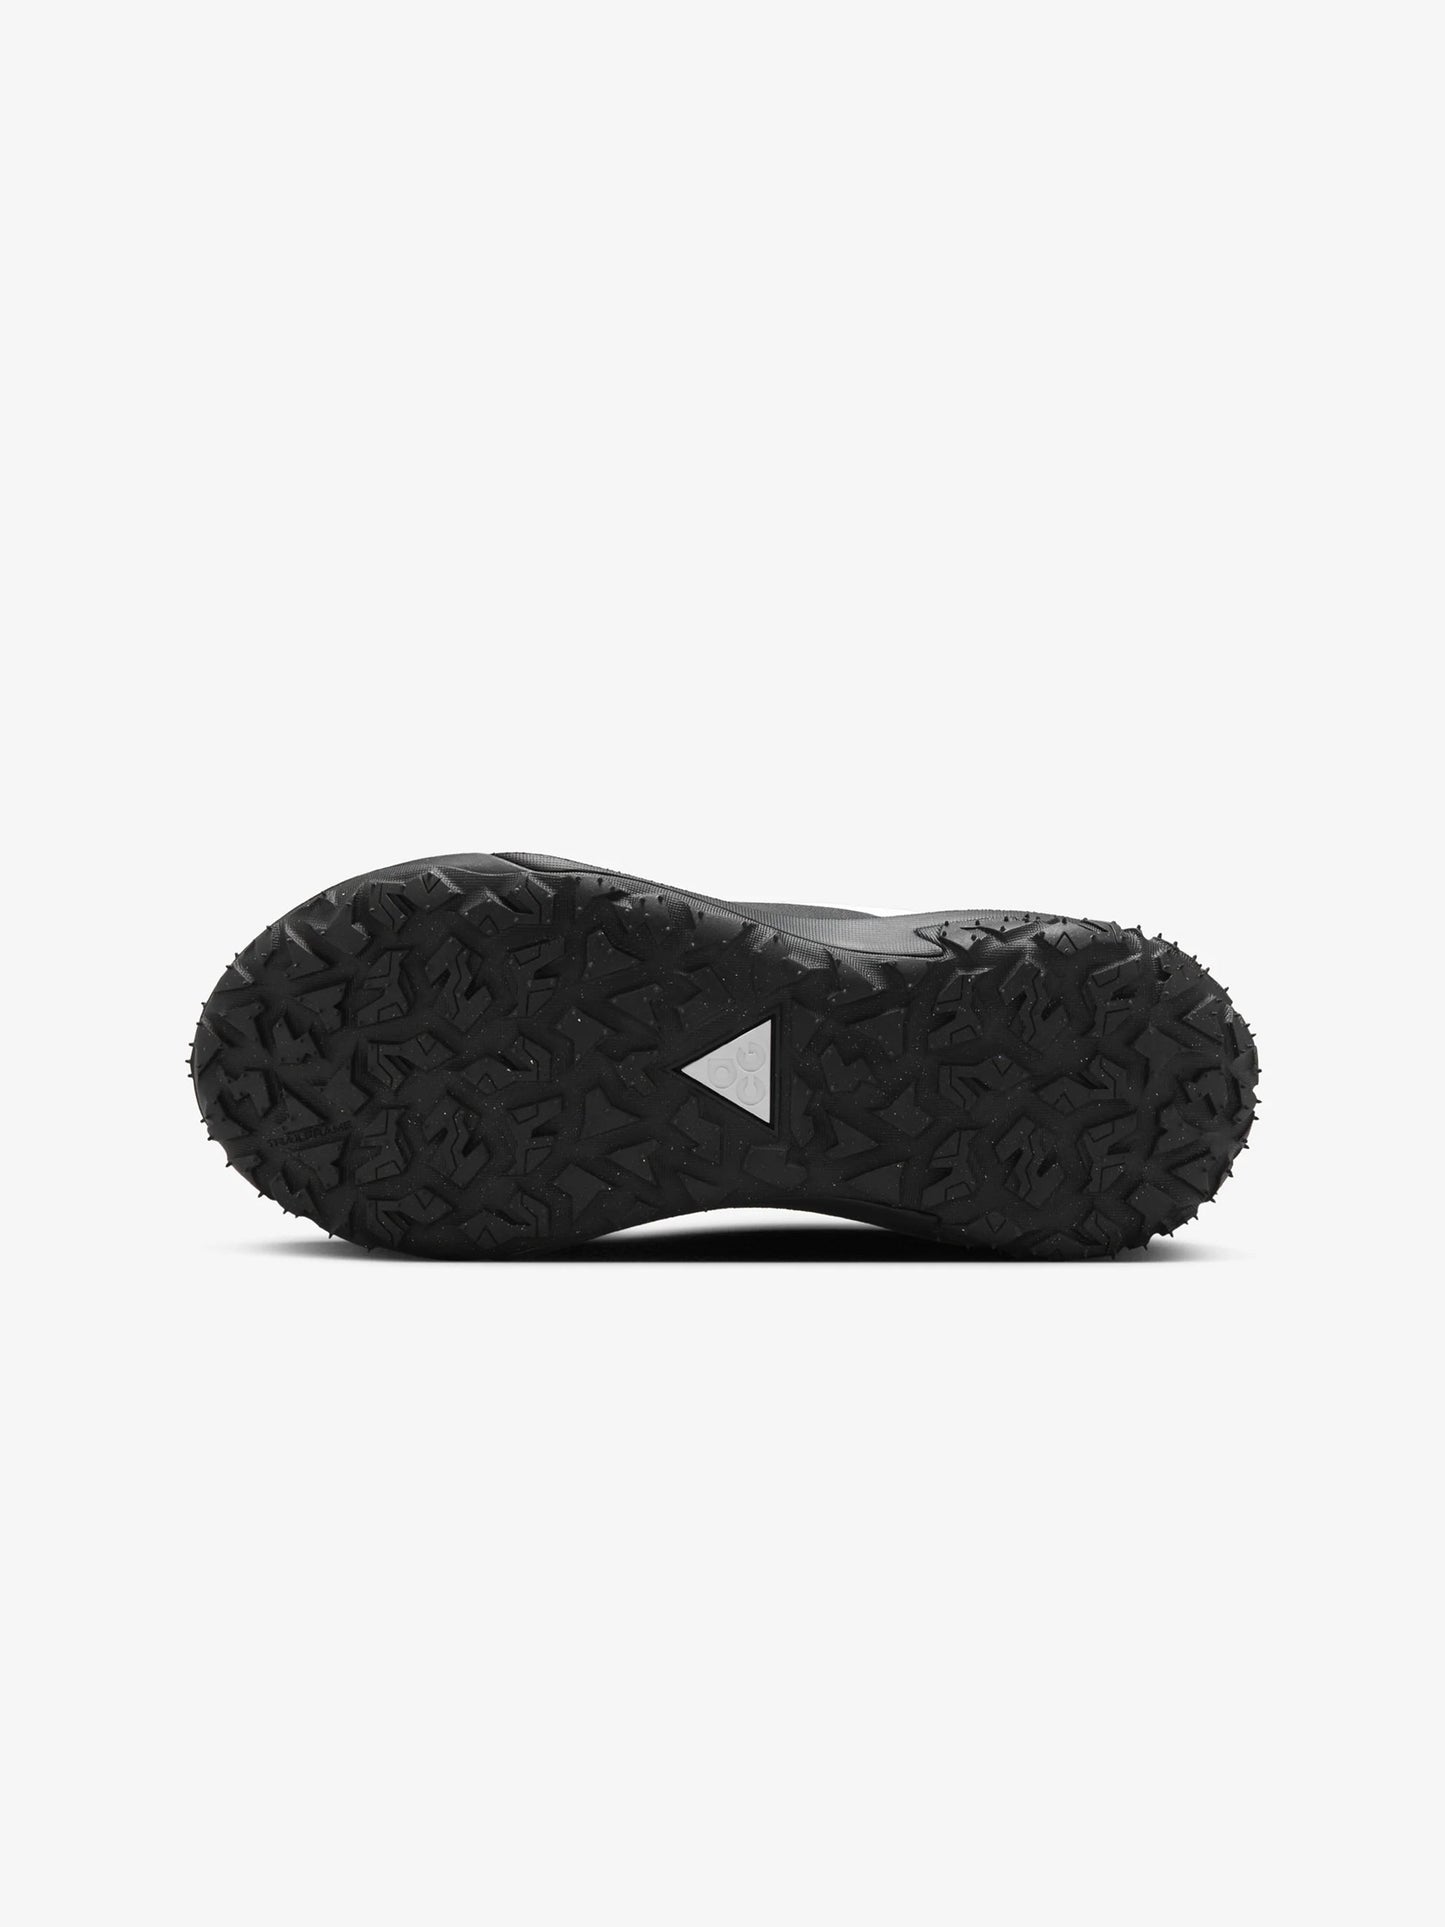 Comme Des Garçons Homme Plus x Nike ACG Mountain Fly 2 (Black/White)